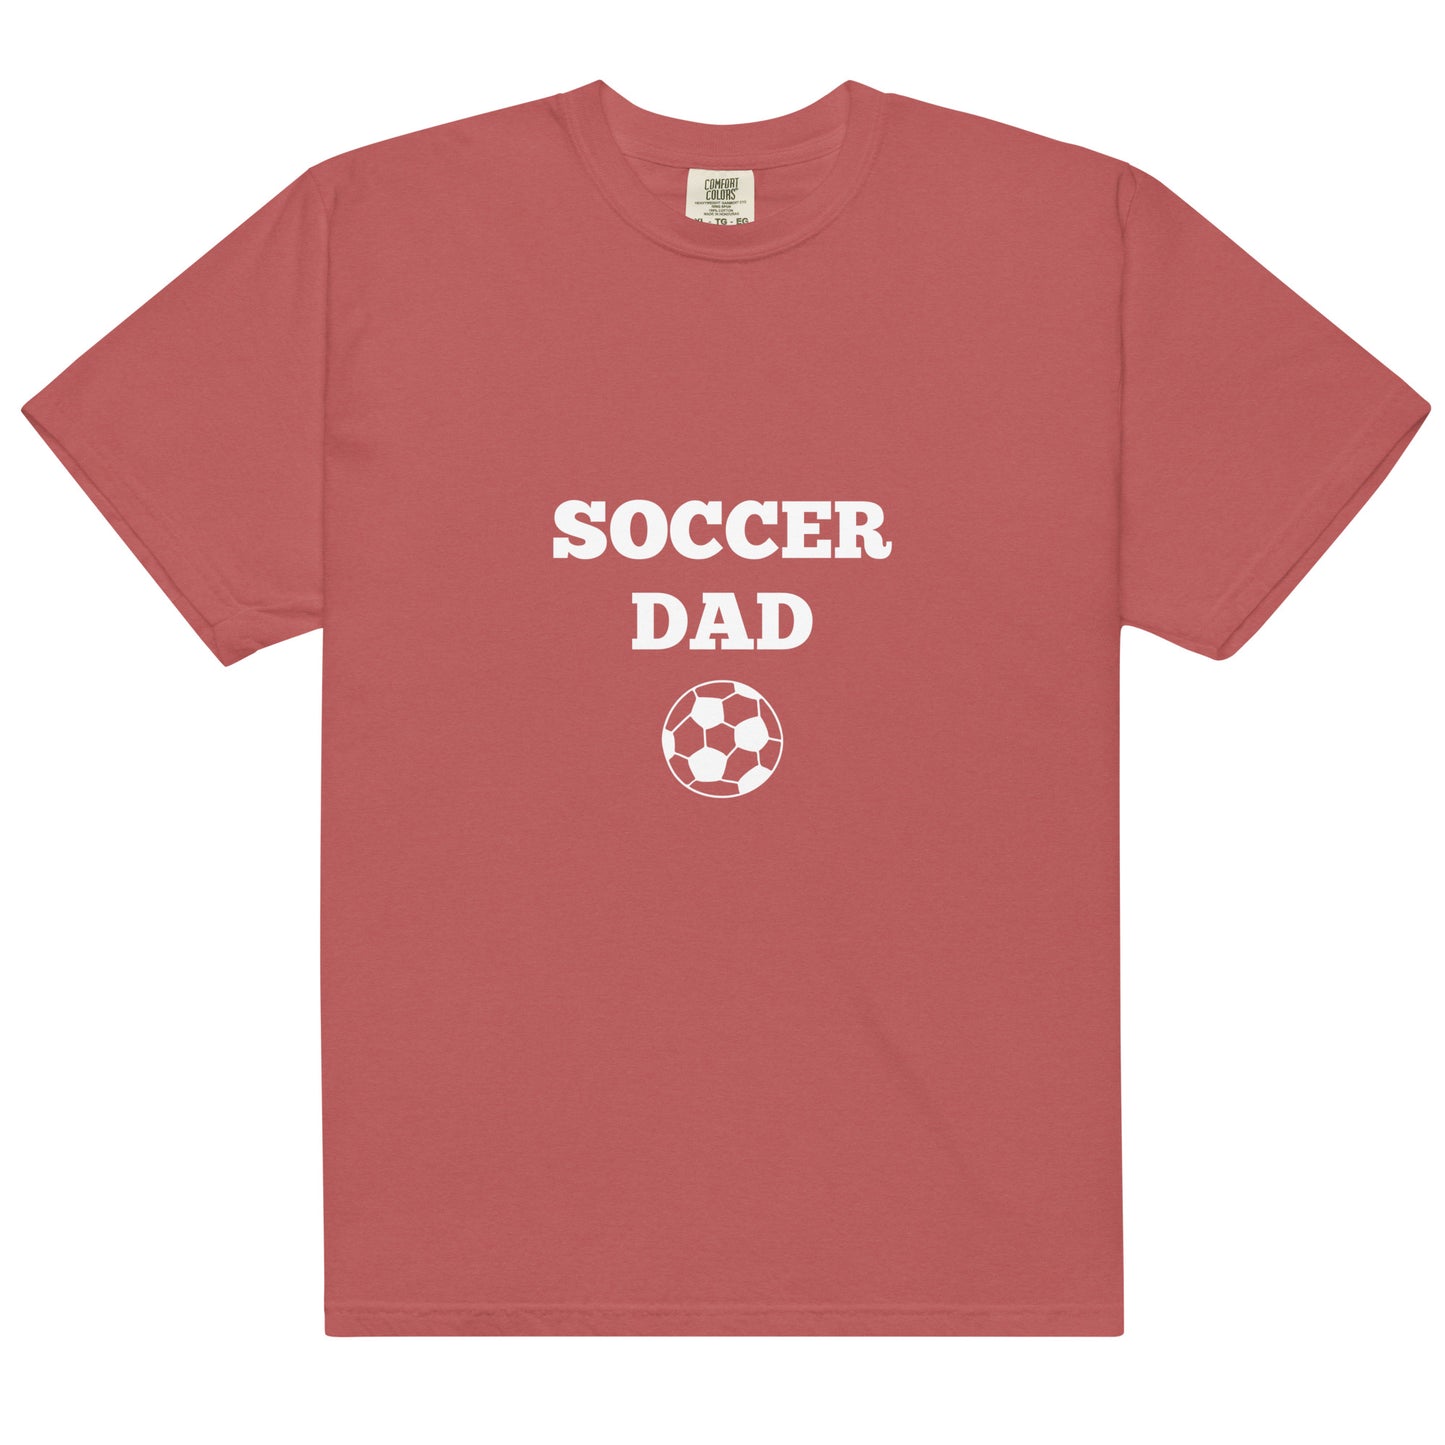 Soccer Dad Printed Tshirt